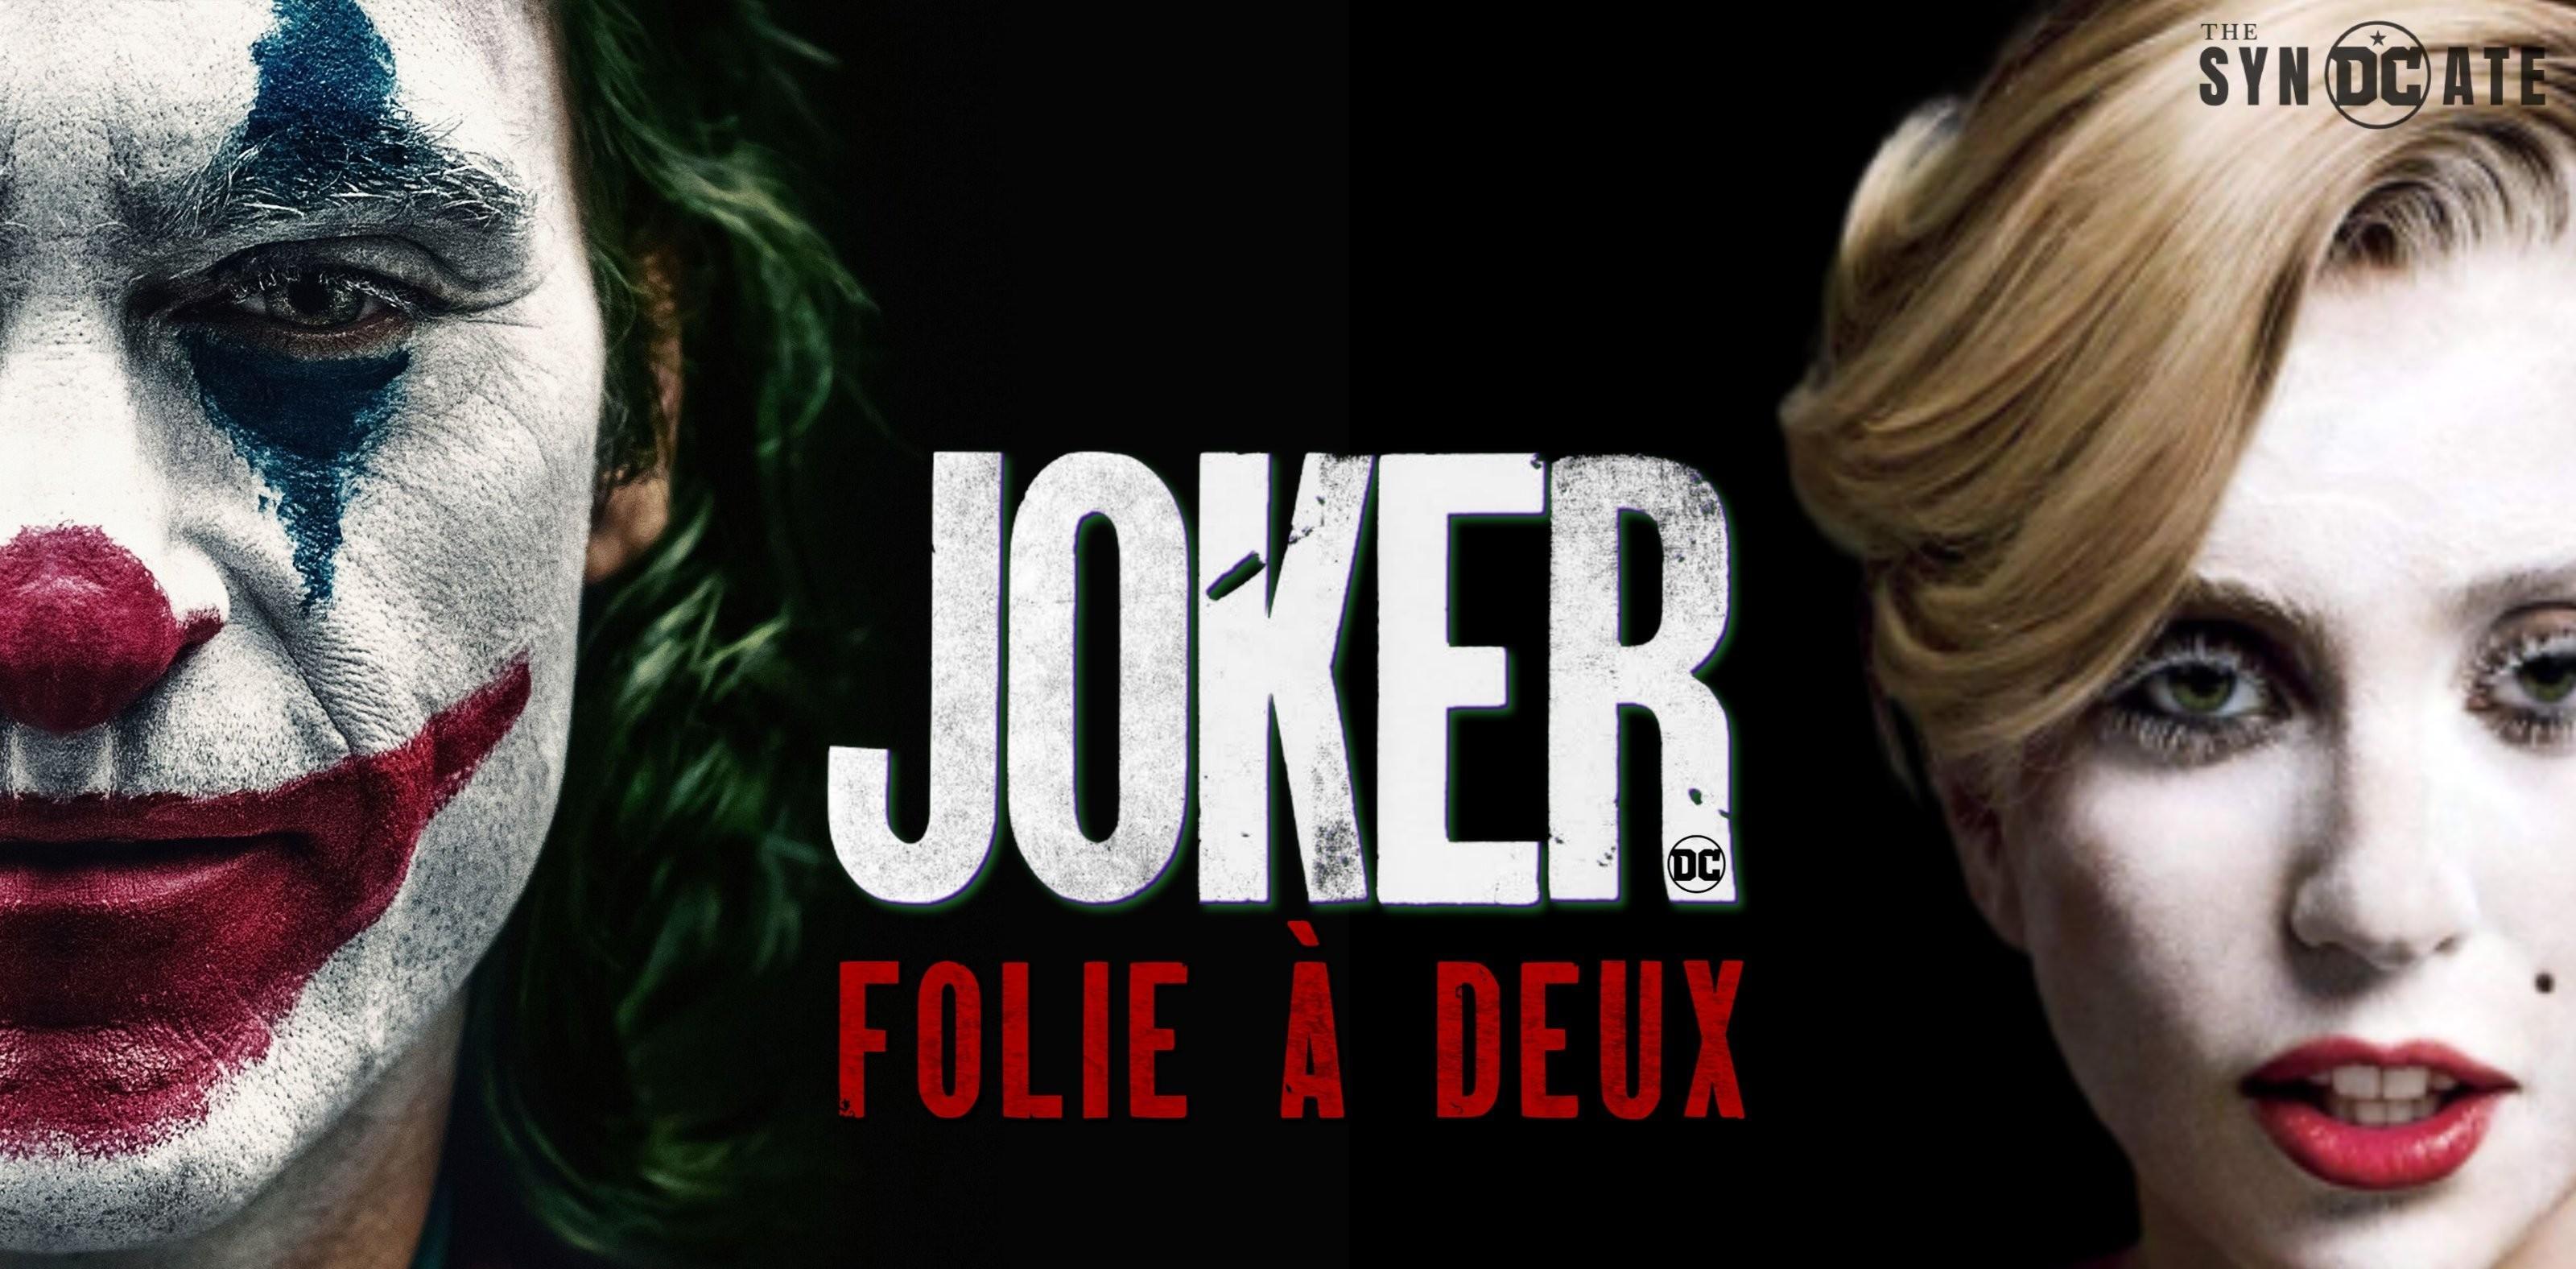 小丑 2 的正式标题:joker: folie à deux, 直译为二联性精神病,意